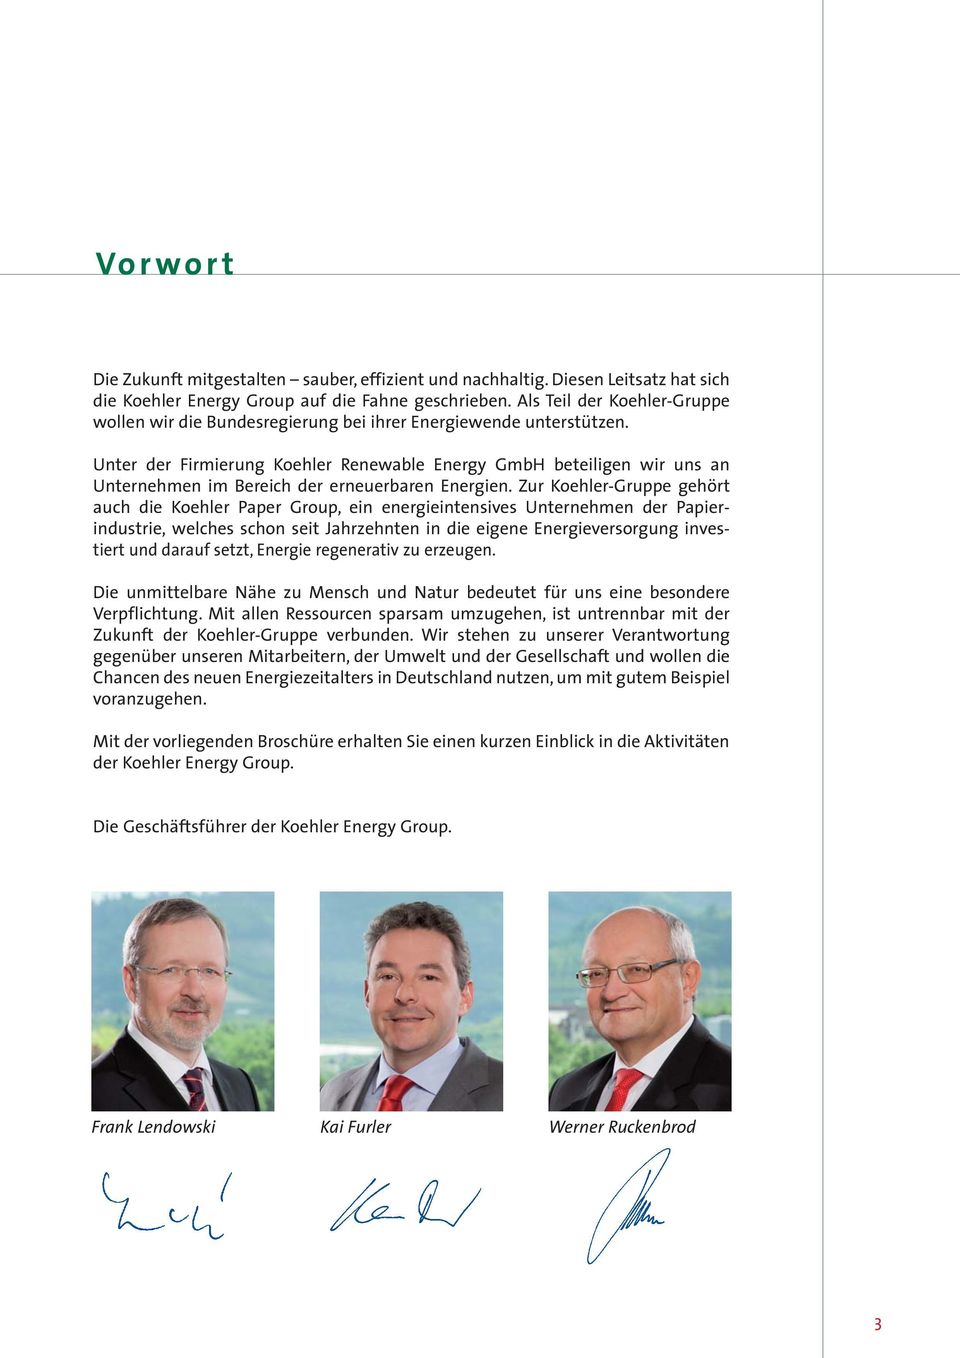 Unter der Firmierung Koehler Renewable Energy GmbH beteiligen wir uns an Unternehmen im Bereich der erneuerbaren Energien.